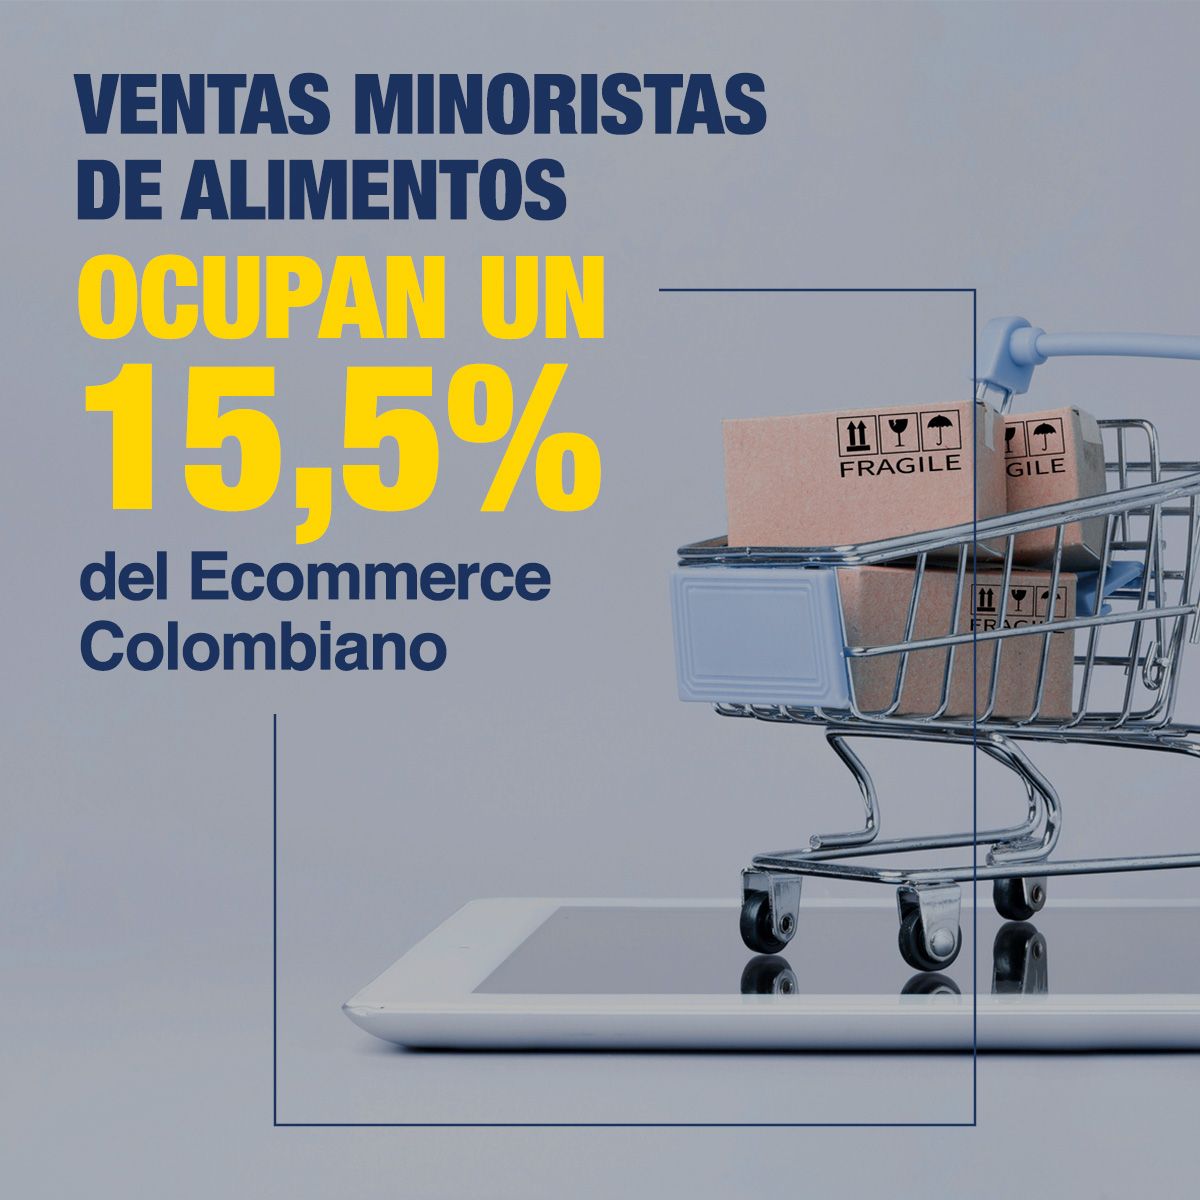 Ventas Minoristas de Alimentos Ocupan un 15,5% del Ecommerce Colombiano